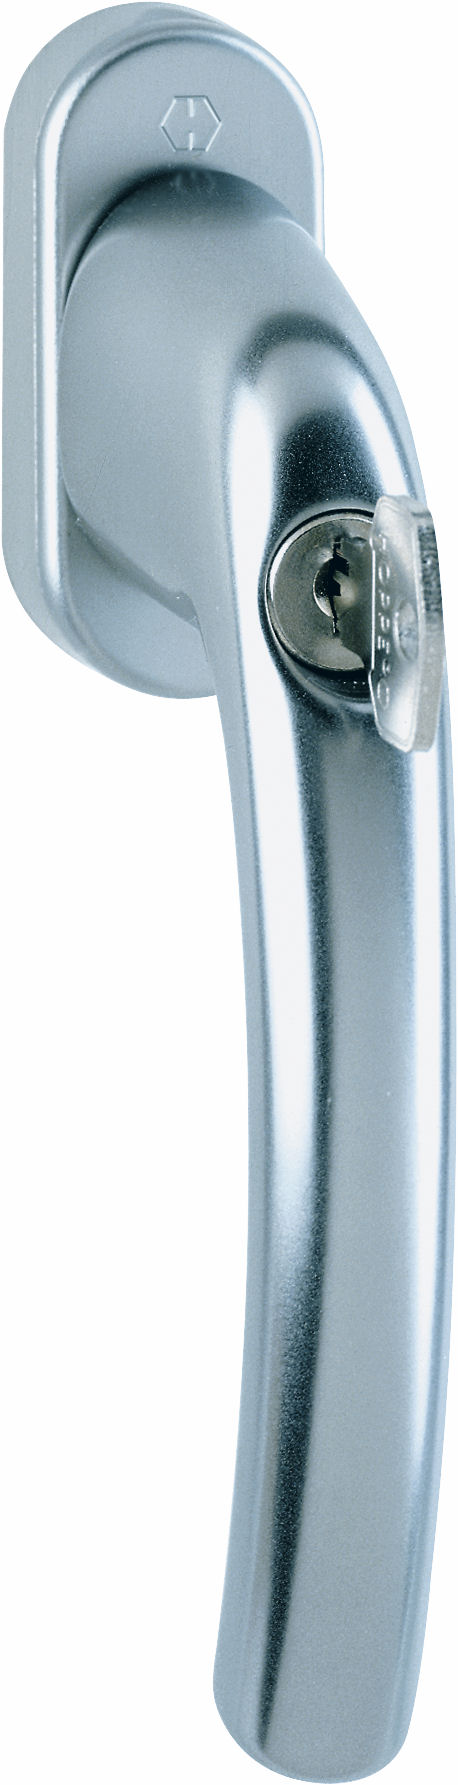 Martellina dk con chiave HOPPE modello TOKYO per serramento con rosetta con quadro 45 in alluminio titanio